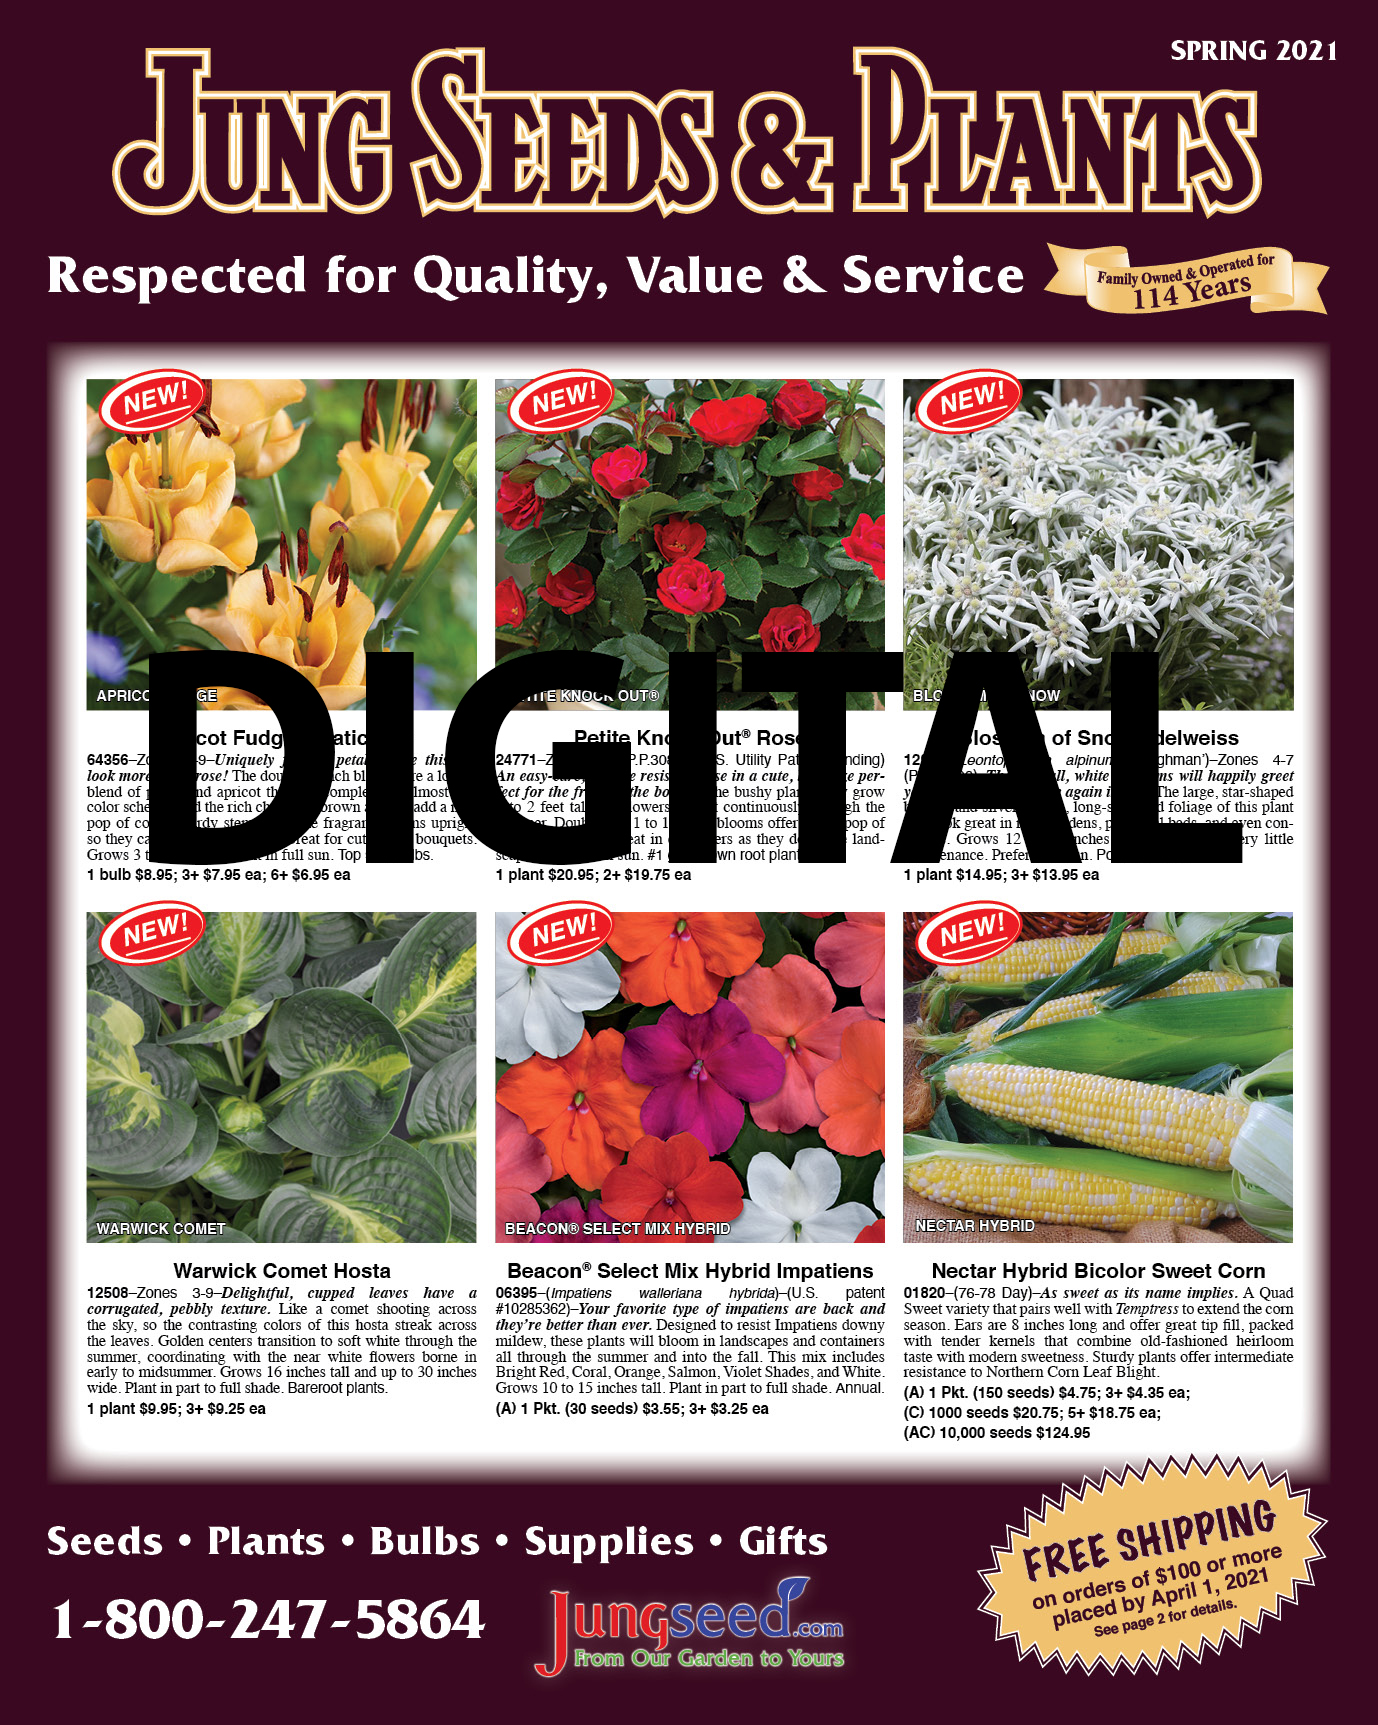 Digital Catalog